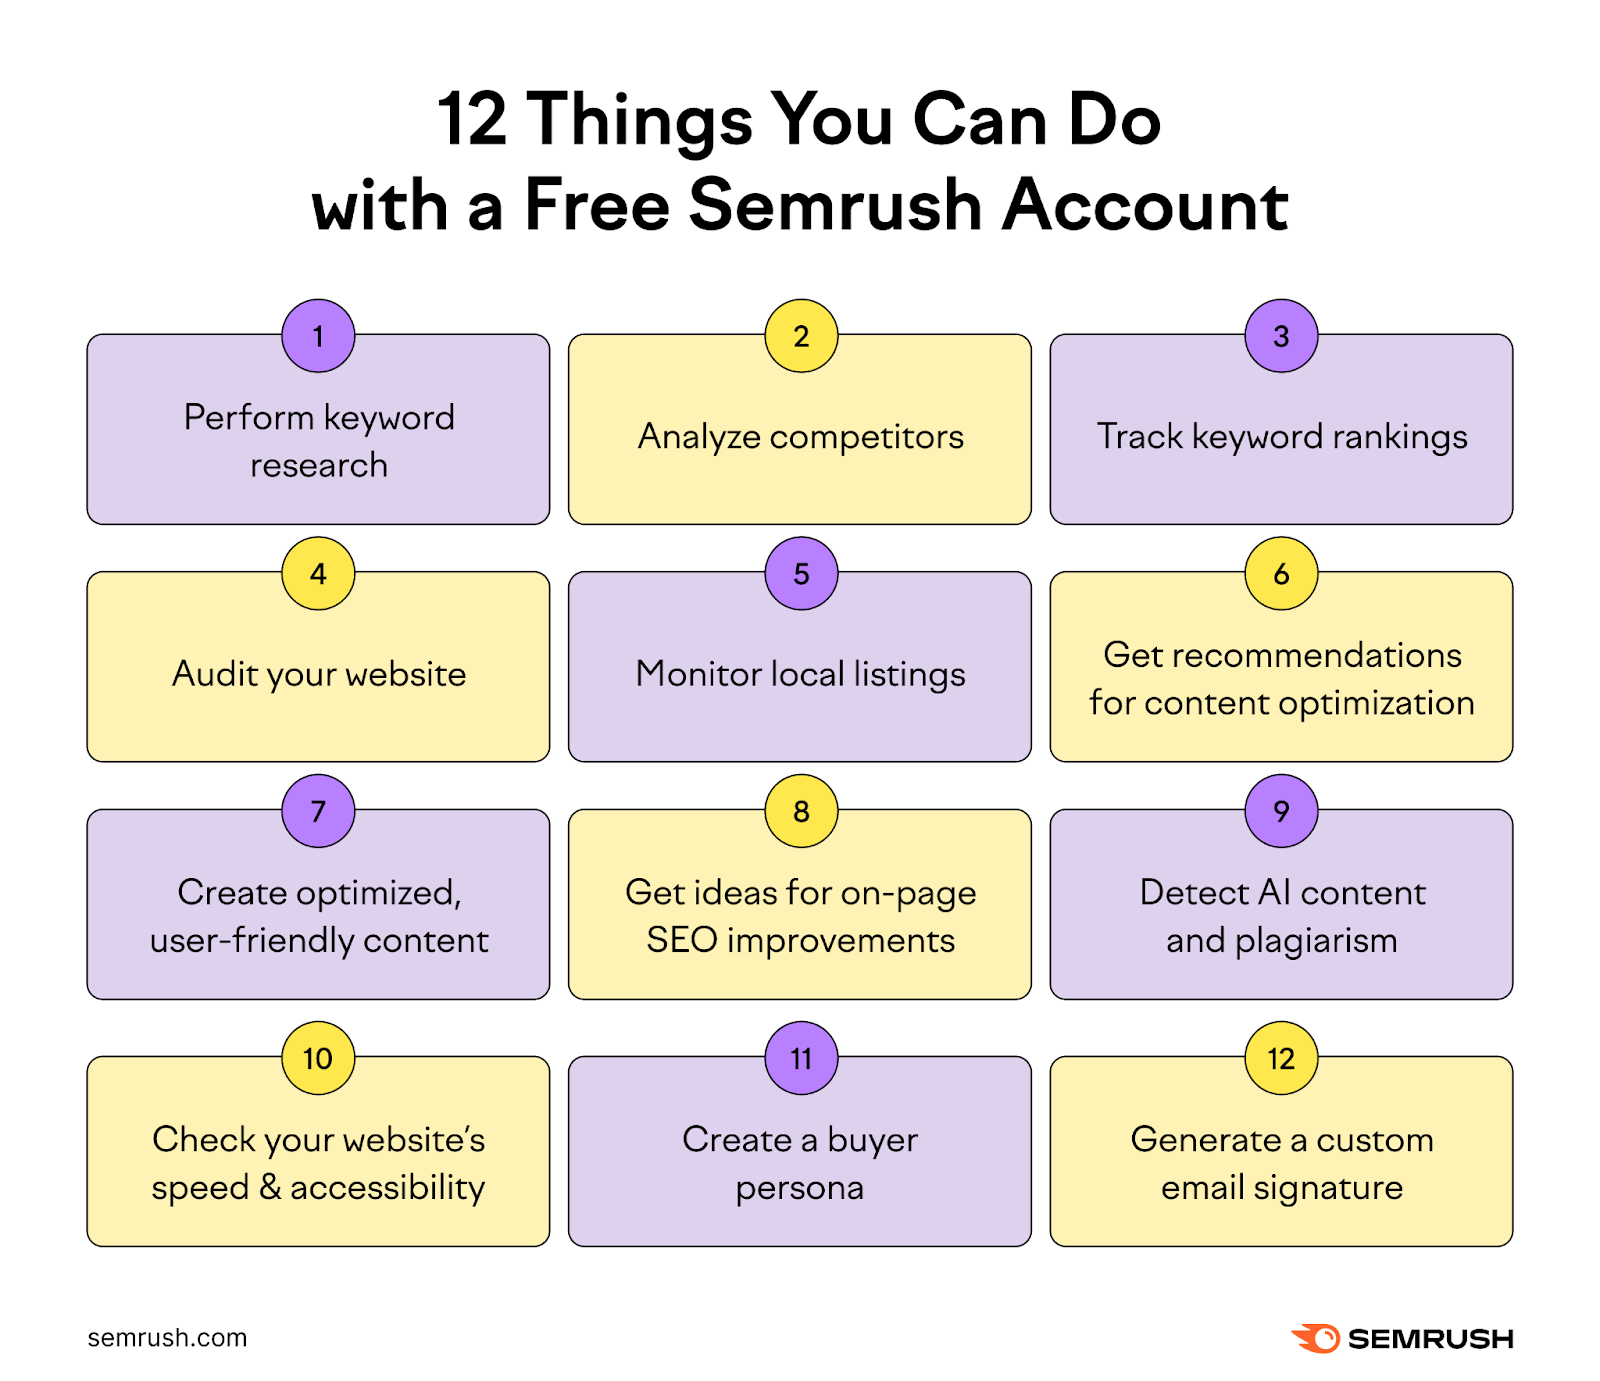 Semrush free account features